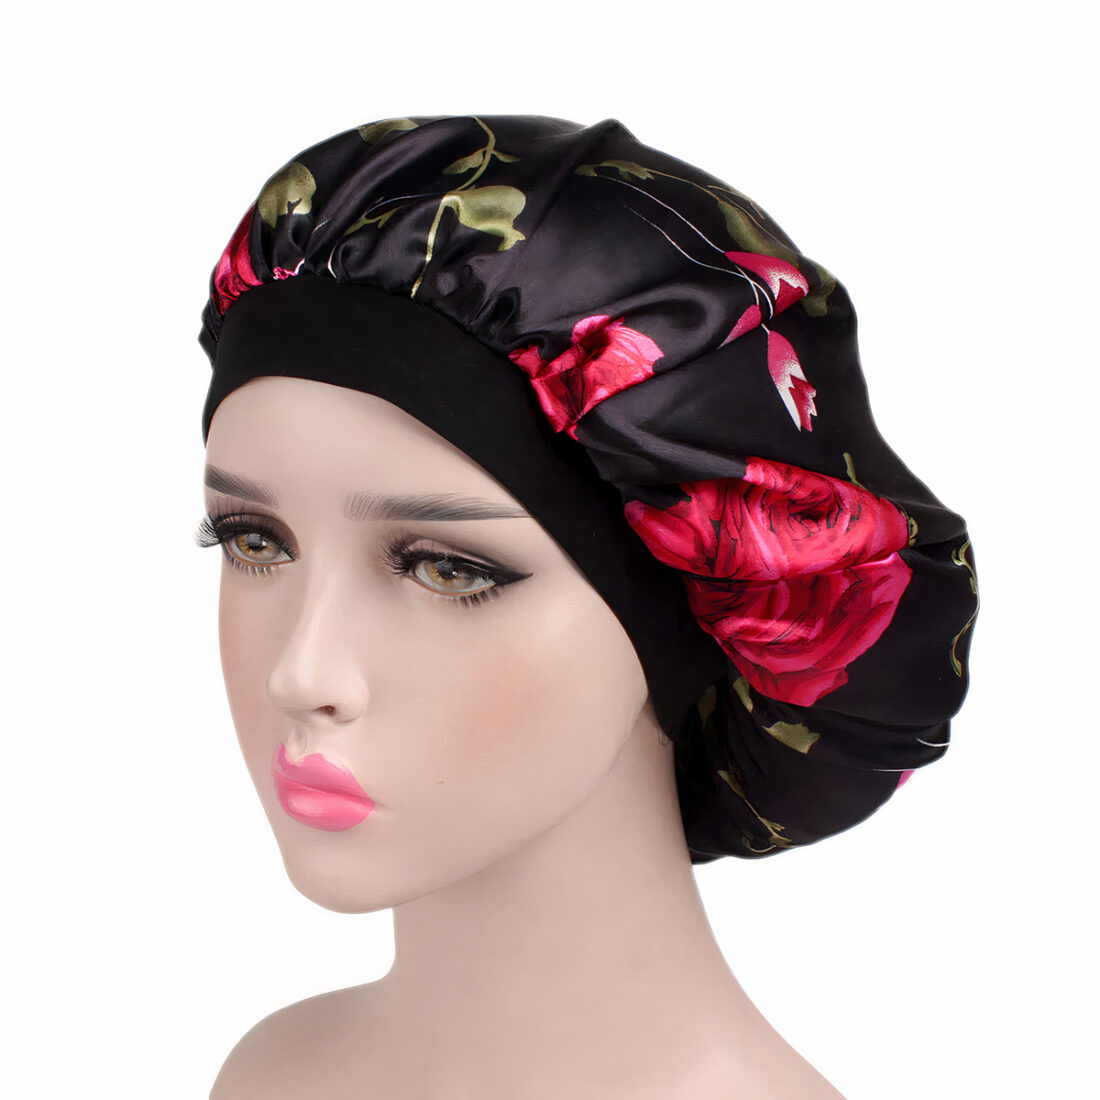 Tête à coiffer maquillée portant un bonnet en satin noir avec fleurs rouges.